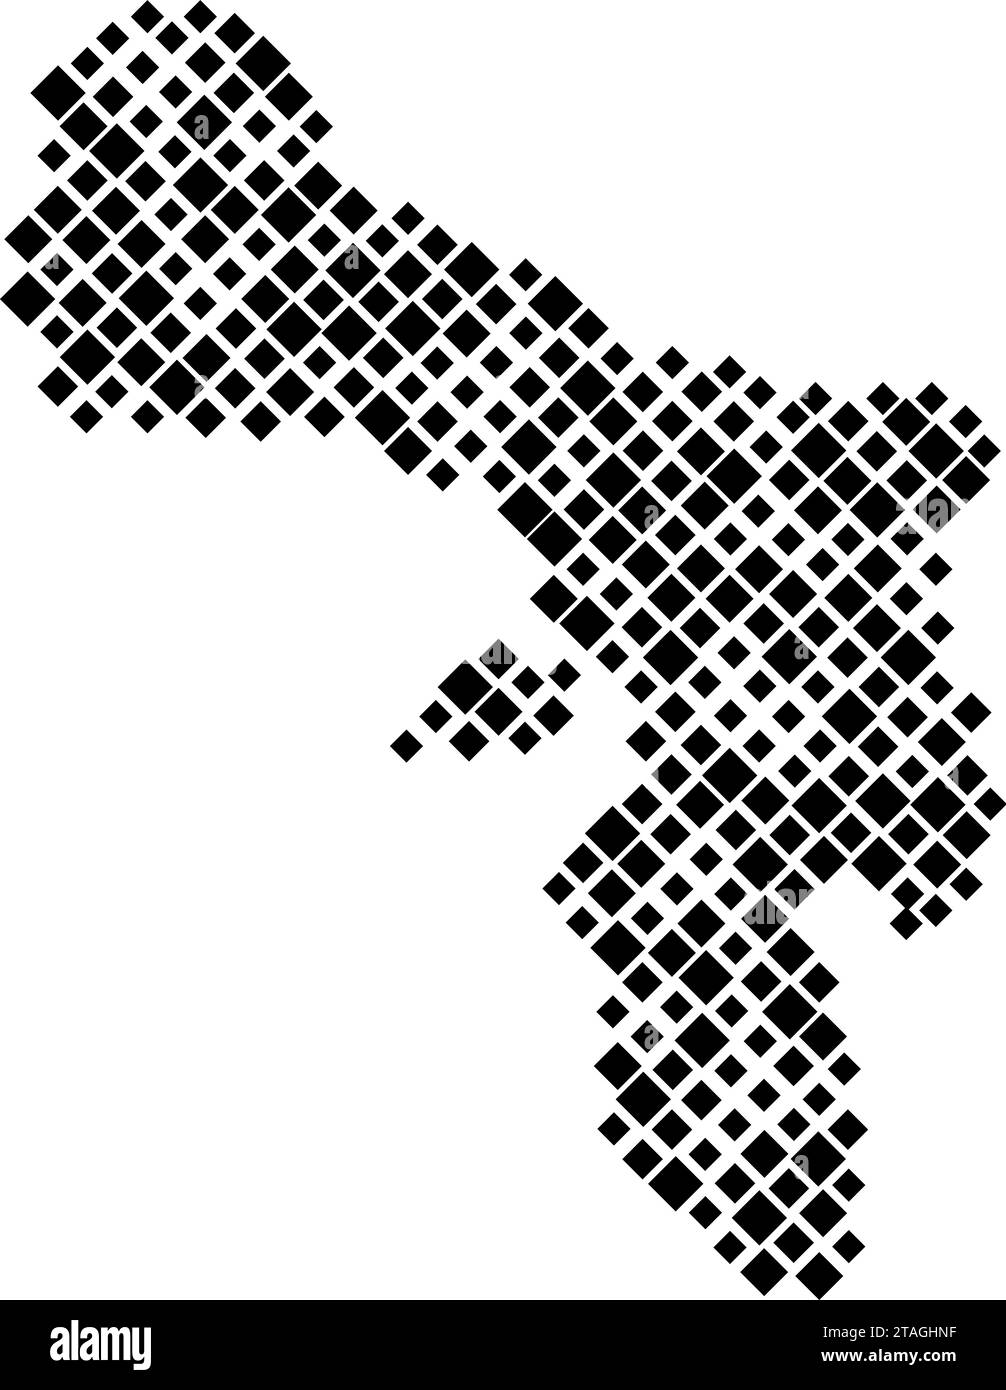 Carte Bonaire à partir d'un motif de losanges noirs de différentes tailles. Illustration vectorielle. Illustration de Vecteur